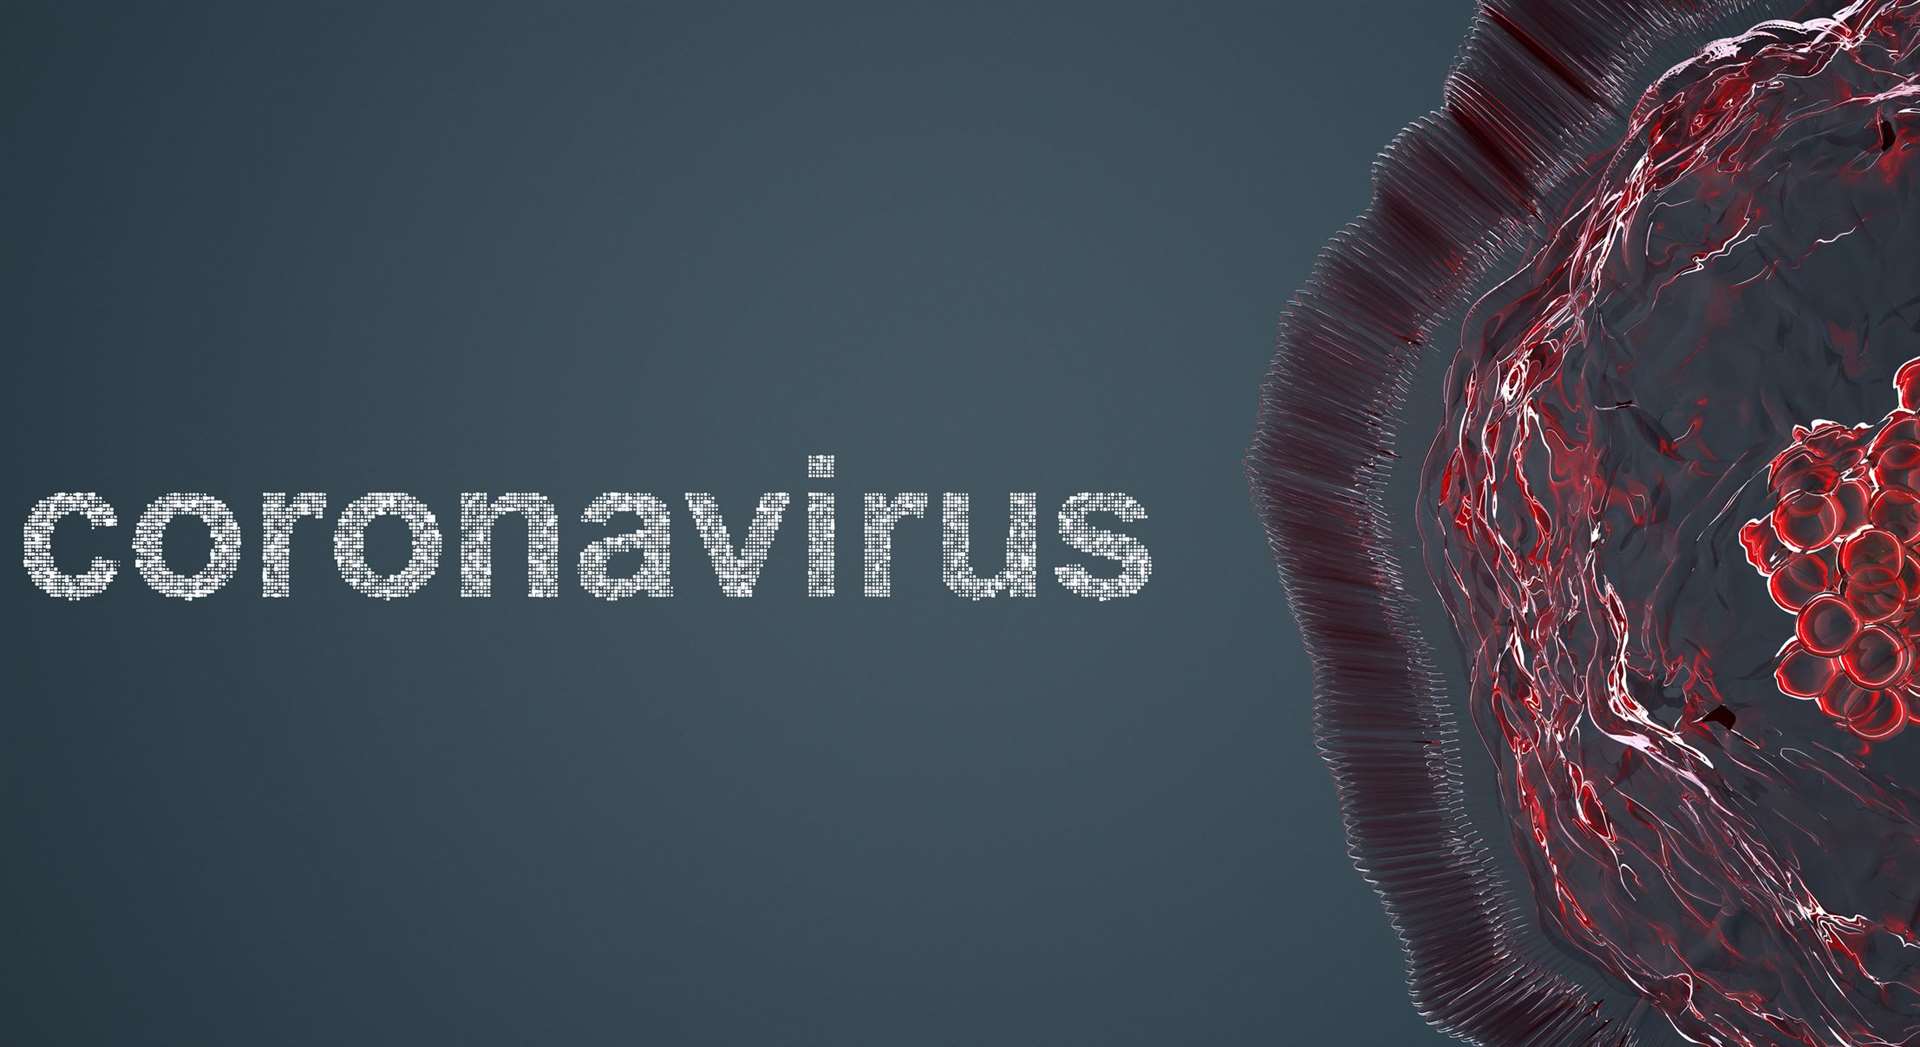 Coronavirus has reached the UK